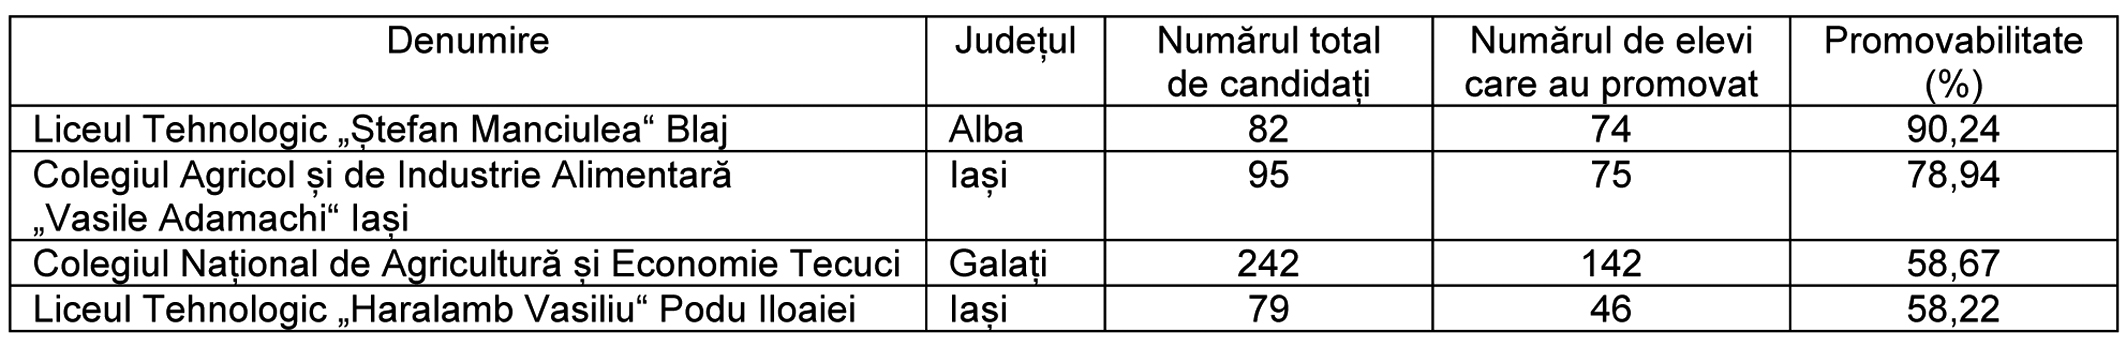 inv tabel 1